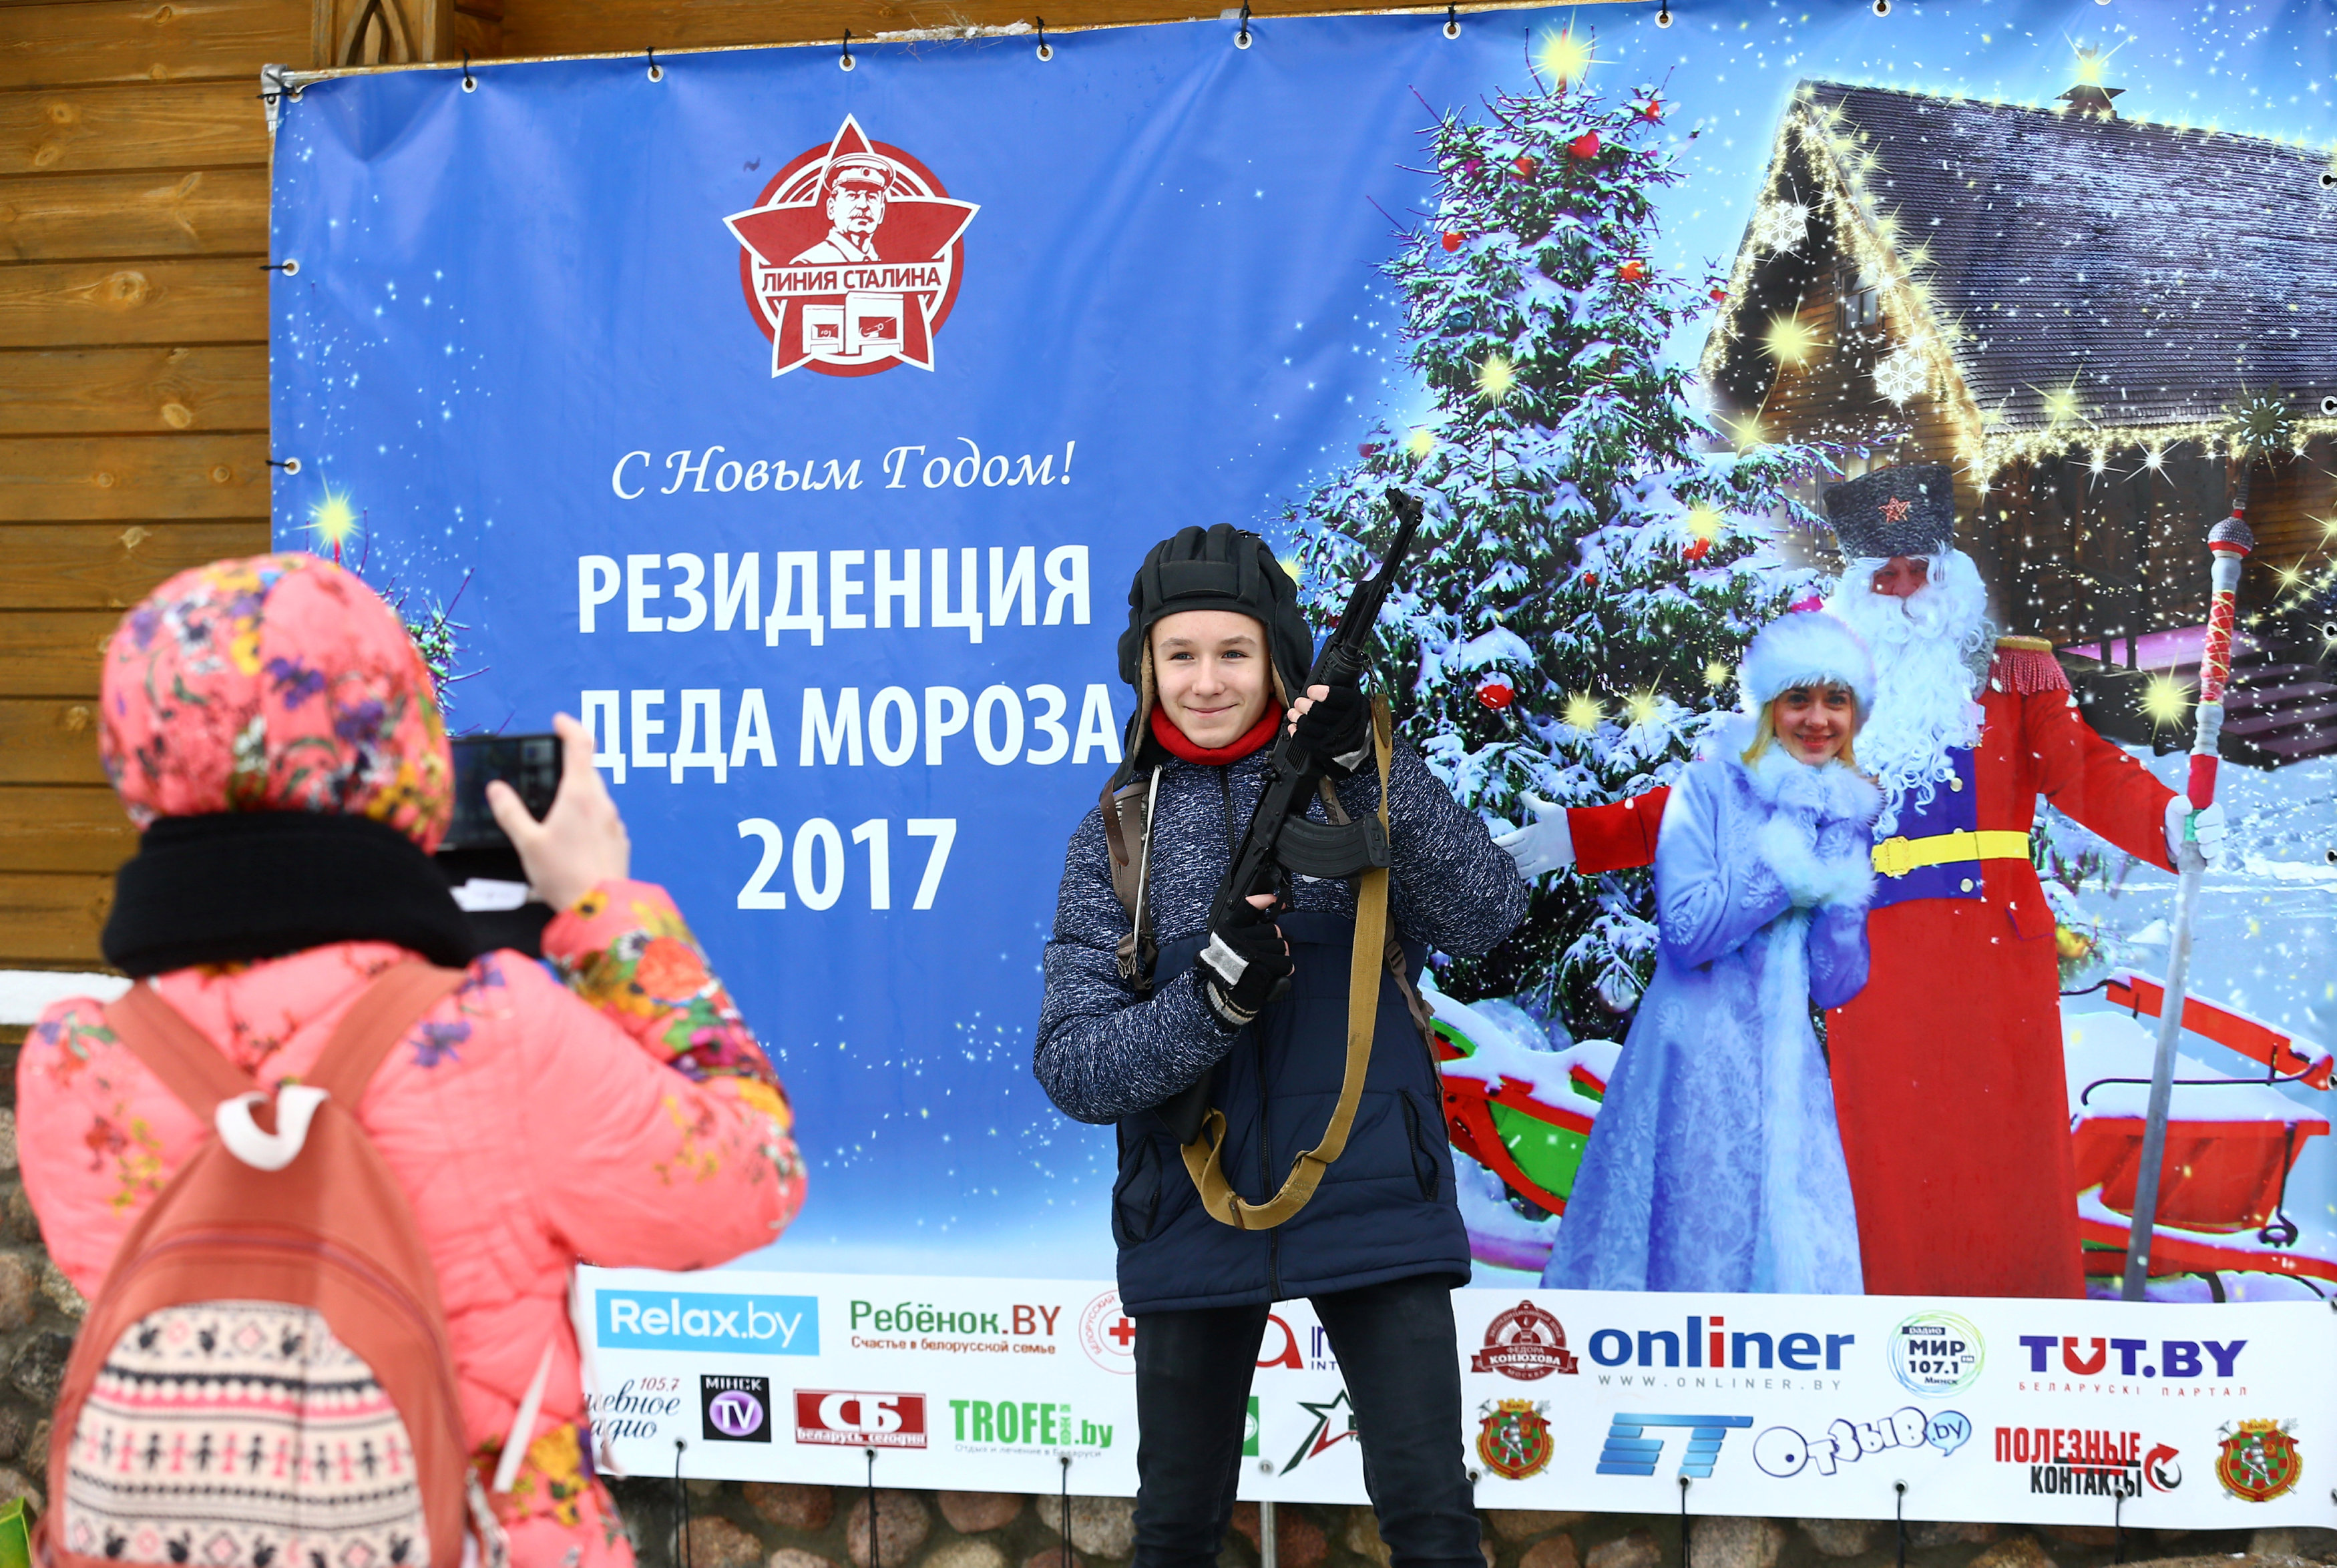 بيلاروسيا وأعياد الميلاد